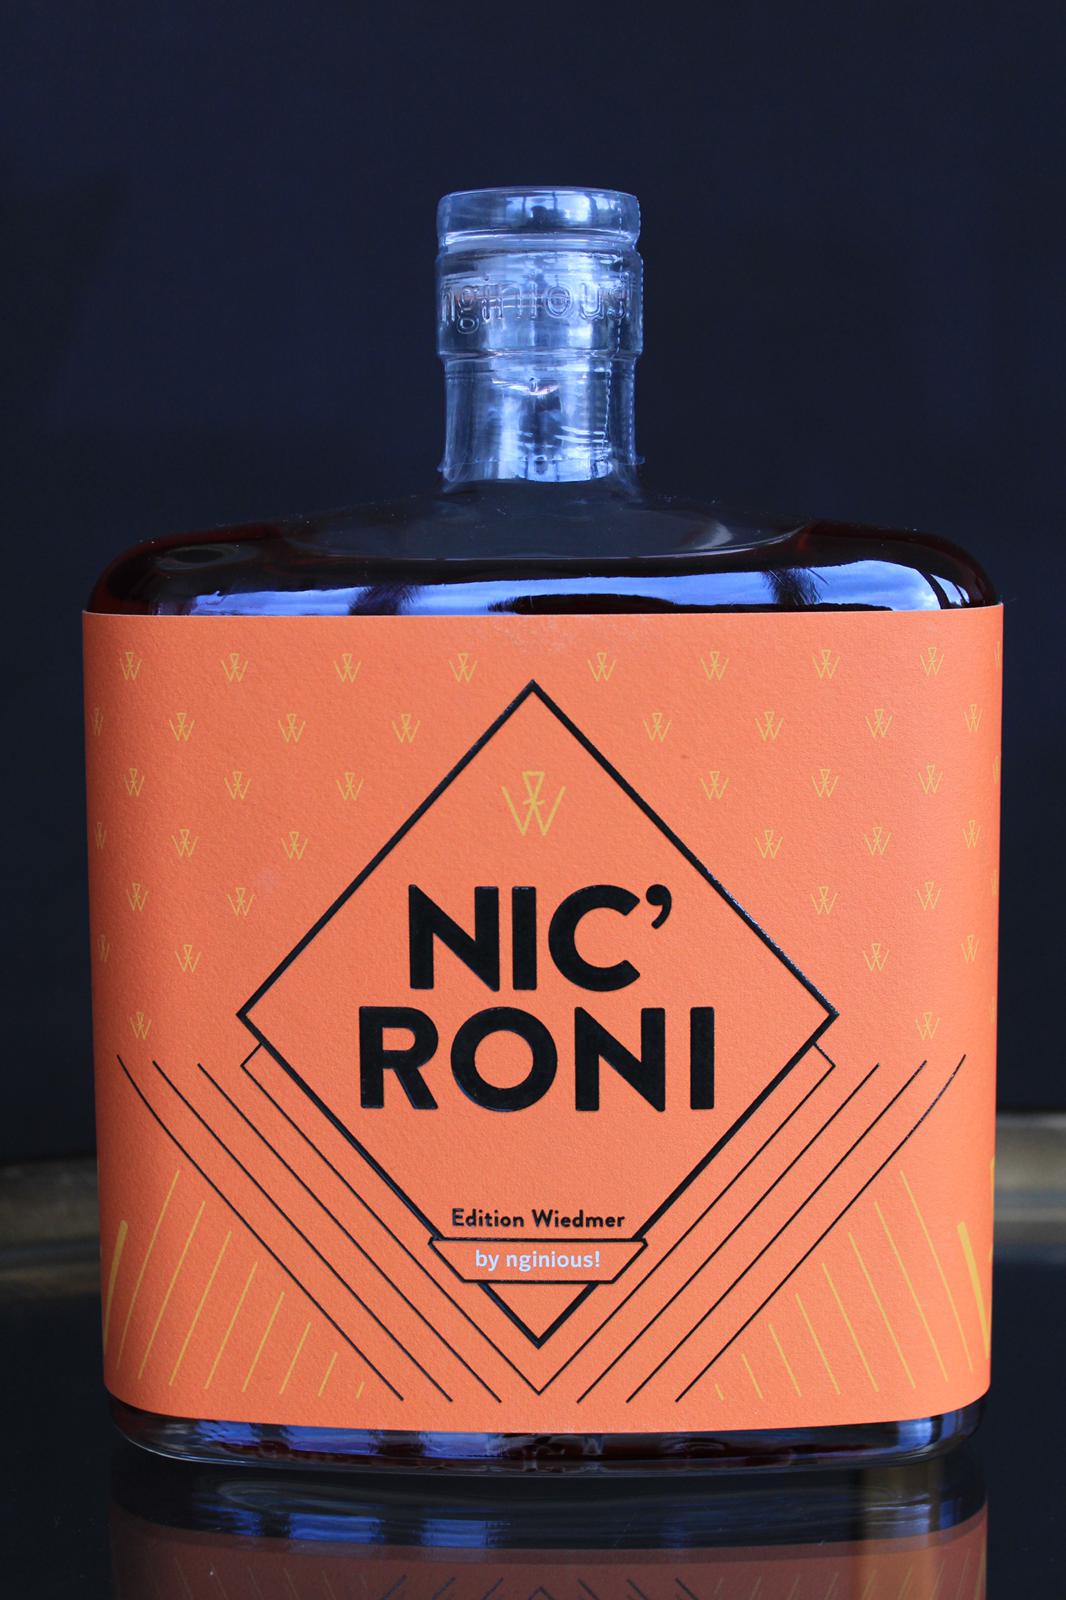 Eine Flasche mit einem leuchtend orangefarbenen Etikett mit der Aufschrift „Nicroni edition wiedmer by ninoust“ vor dunklem Hintergrund.